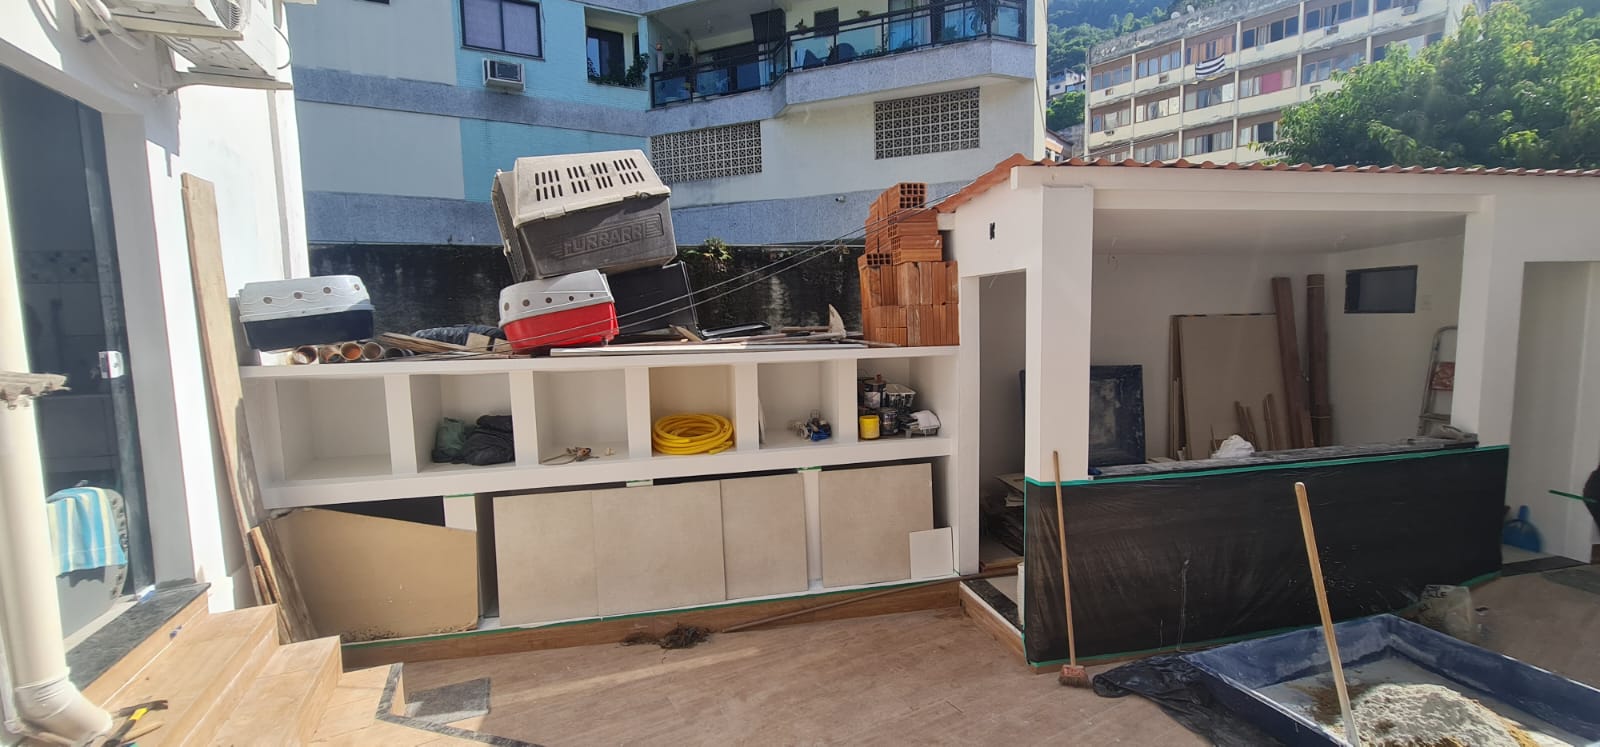 Polícia ambiental identifica obra irregular dentro de clínica veterinária em Angra dos Reis